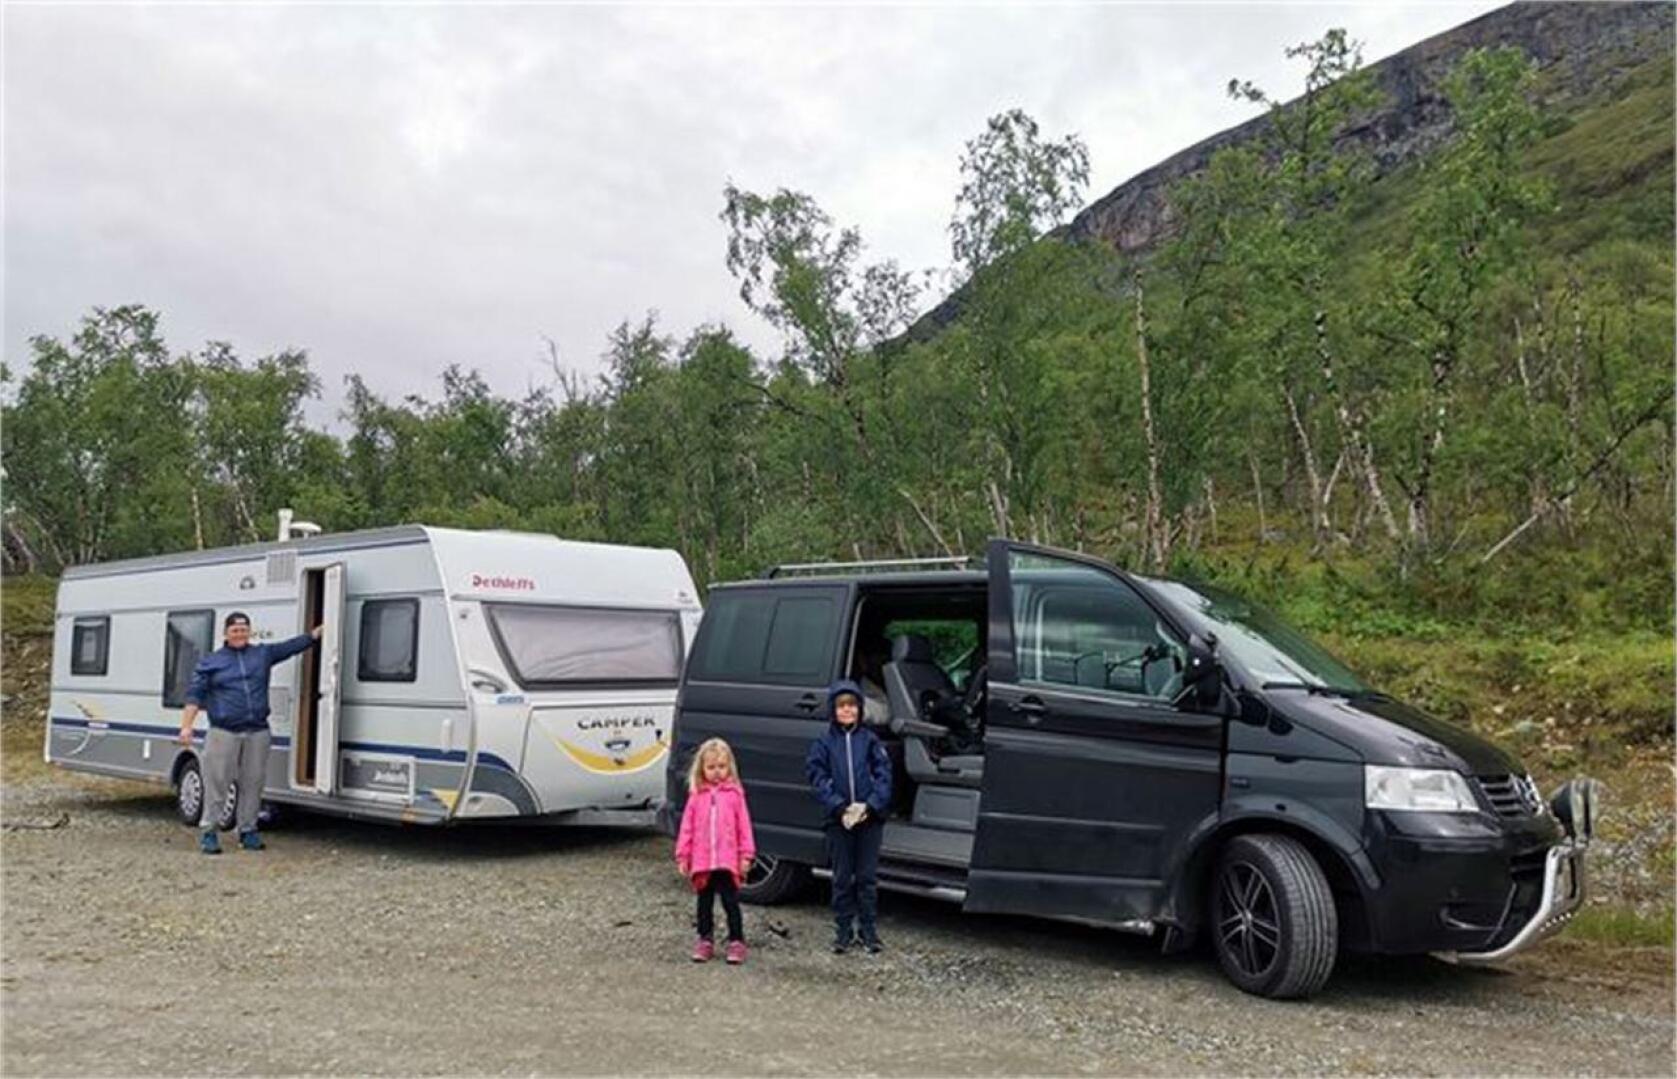 Matkailuvaunu on mahdollistanut Pettersson-Nuotion perheelle monenlaisia seikkailuja.